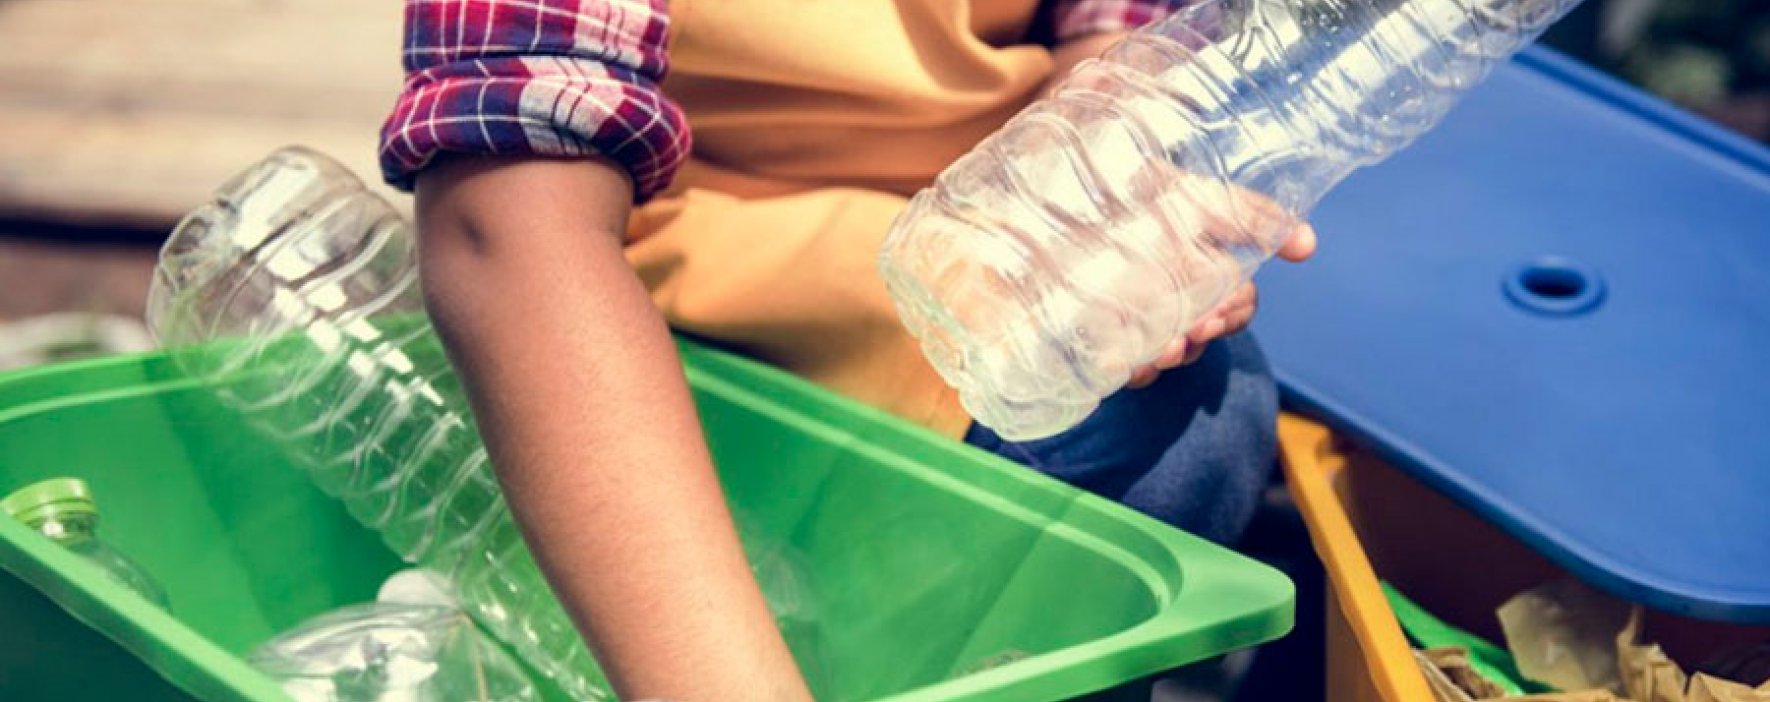 Se crea incentivo para fomentar el reciclaje y tratamiento de residuos en Colombia